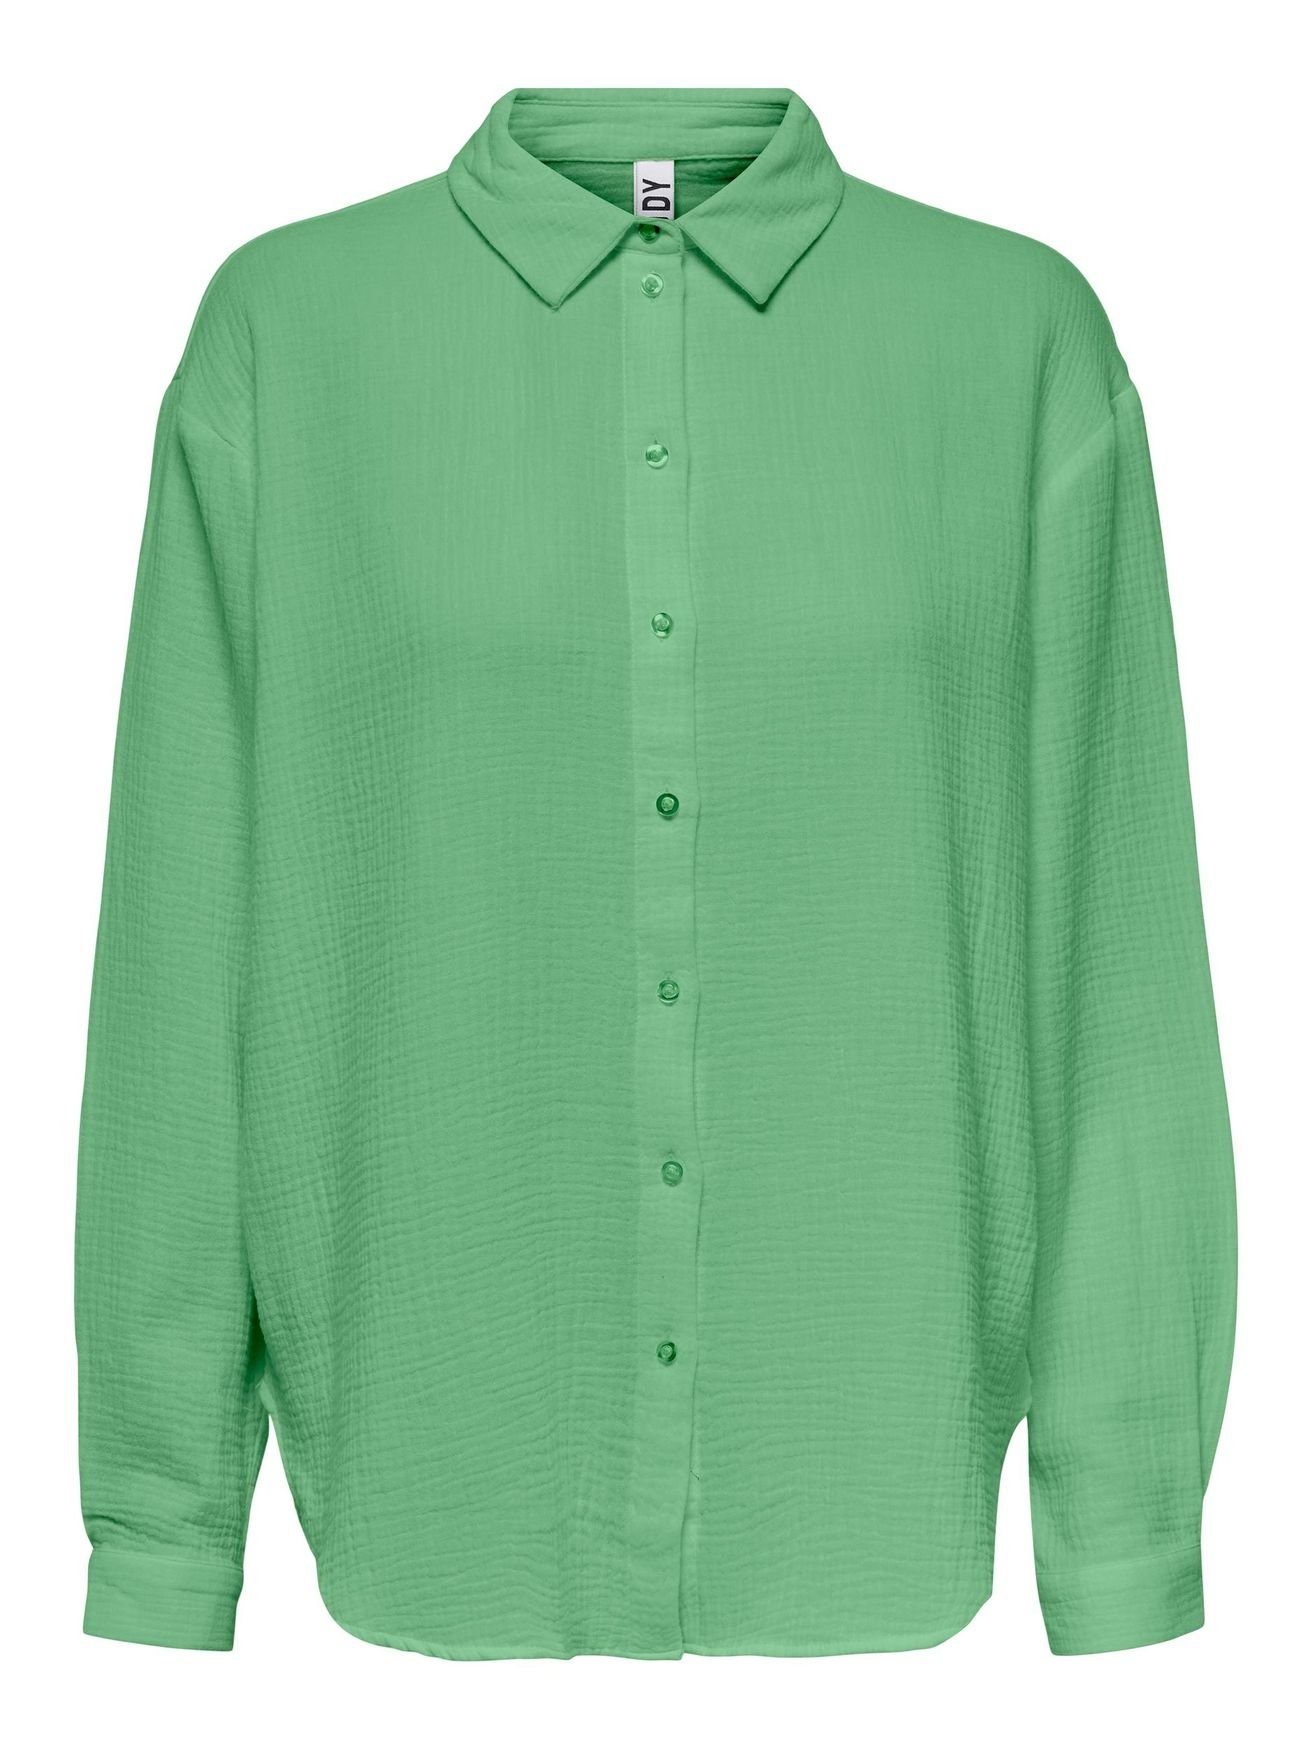 JACQUELINE de YONG Blusenshirt Elegantes Hemd Langarm Bluse in Knitteroptik JDYTHEIS 4944 in Grün | Longshirts